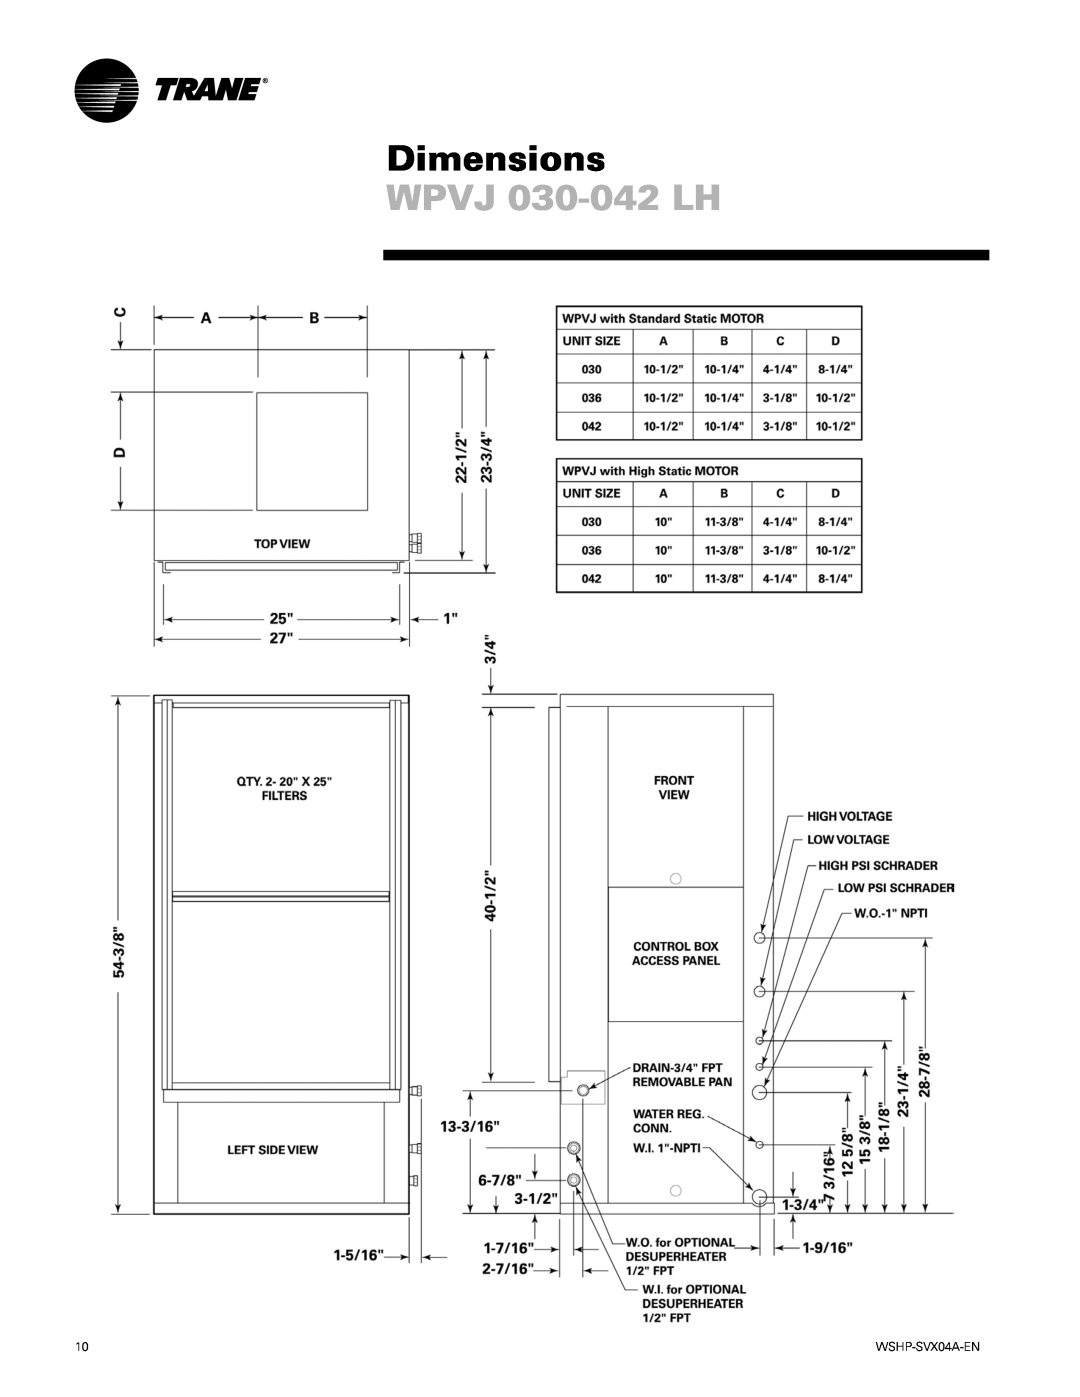 Trane WPHF manual WPVJ 030-042LH, Dimensions 